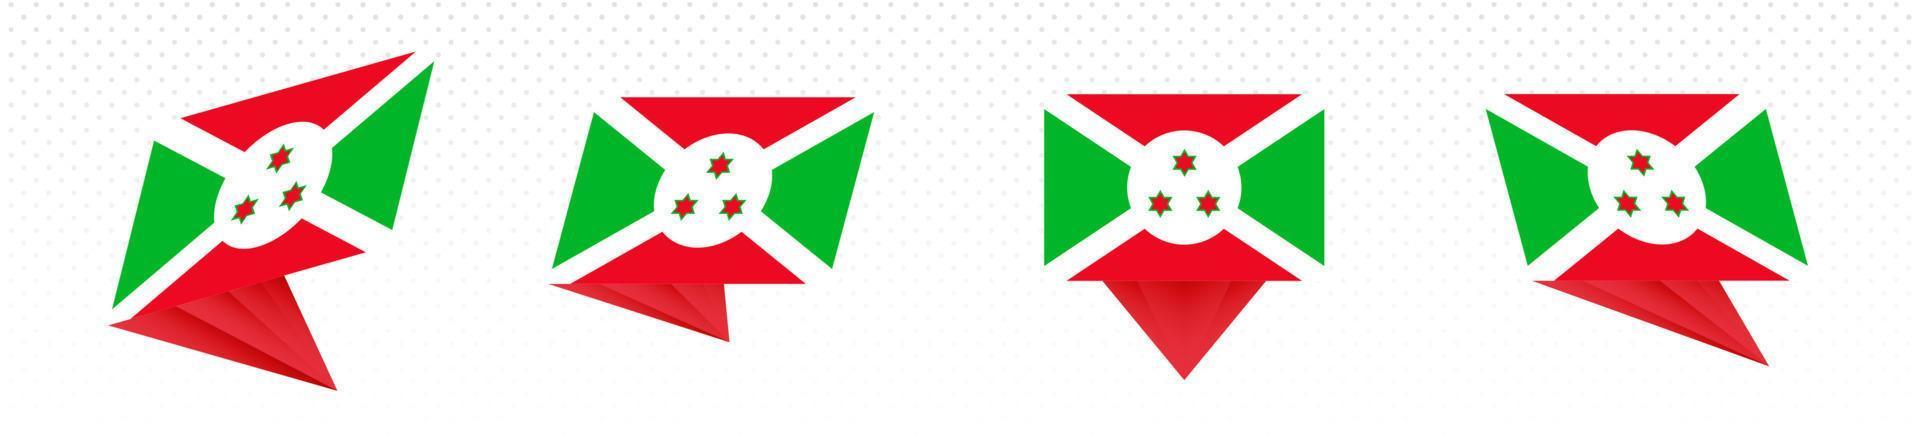 bandera de burundi en diseño abstracto moderno, juego de banderas. vector